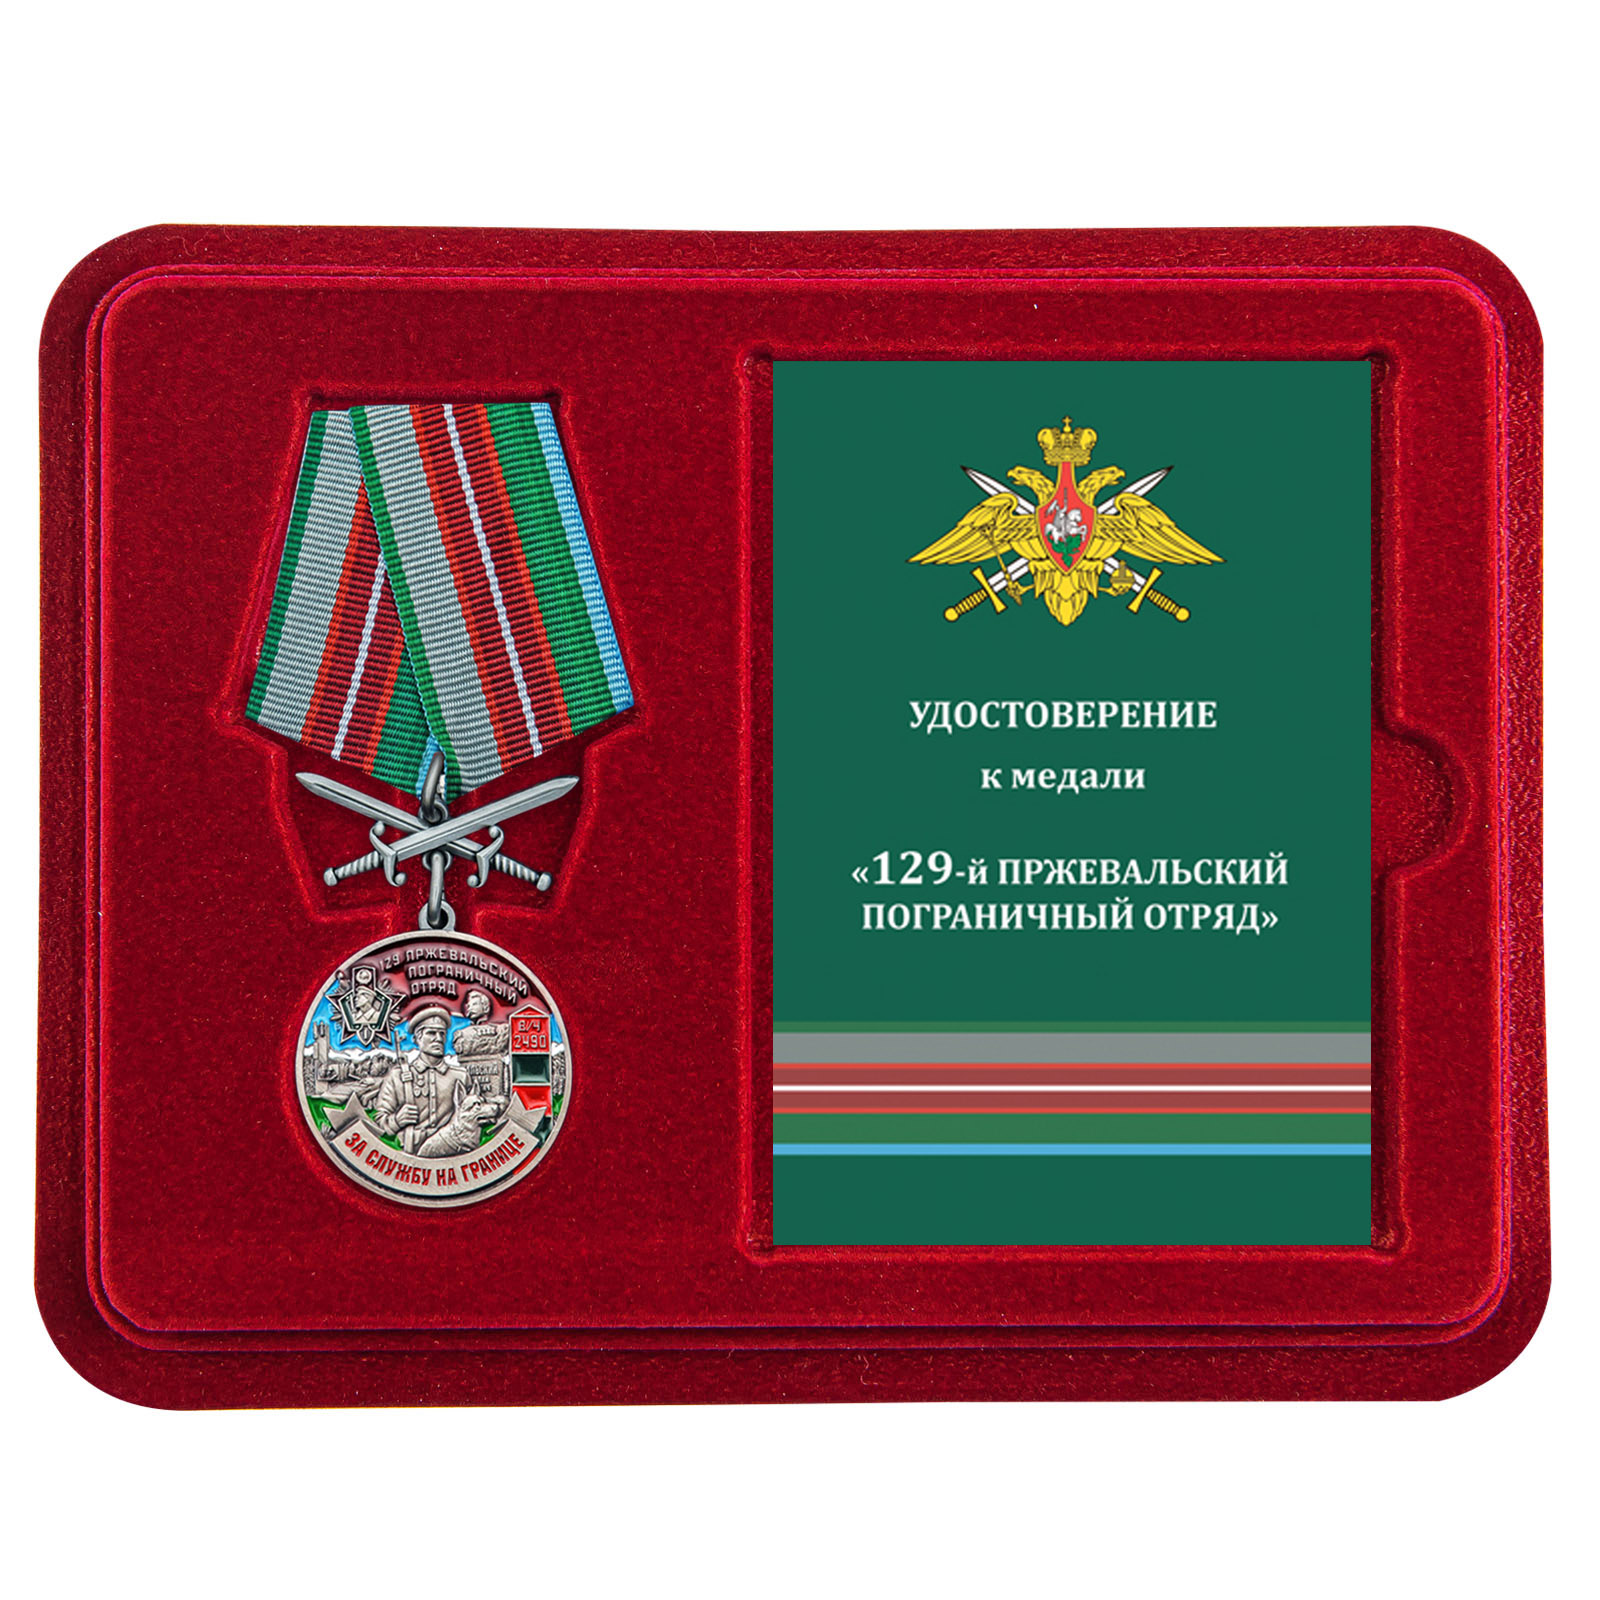 Купить медаль За службу в Пржевальском пограничном отряде выгодно